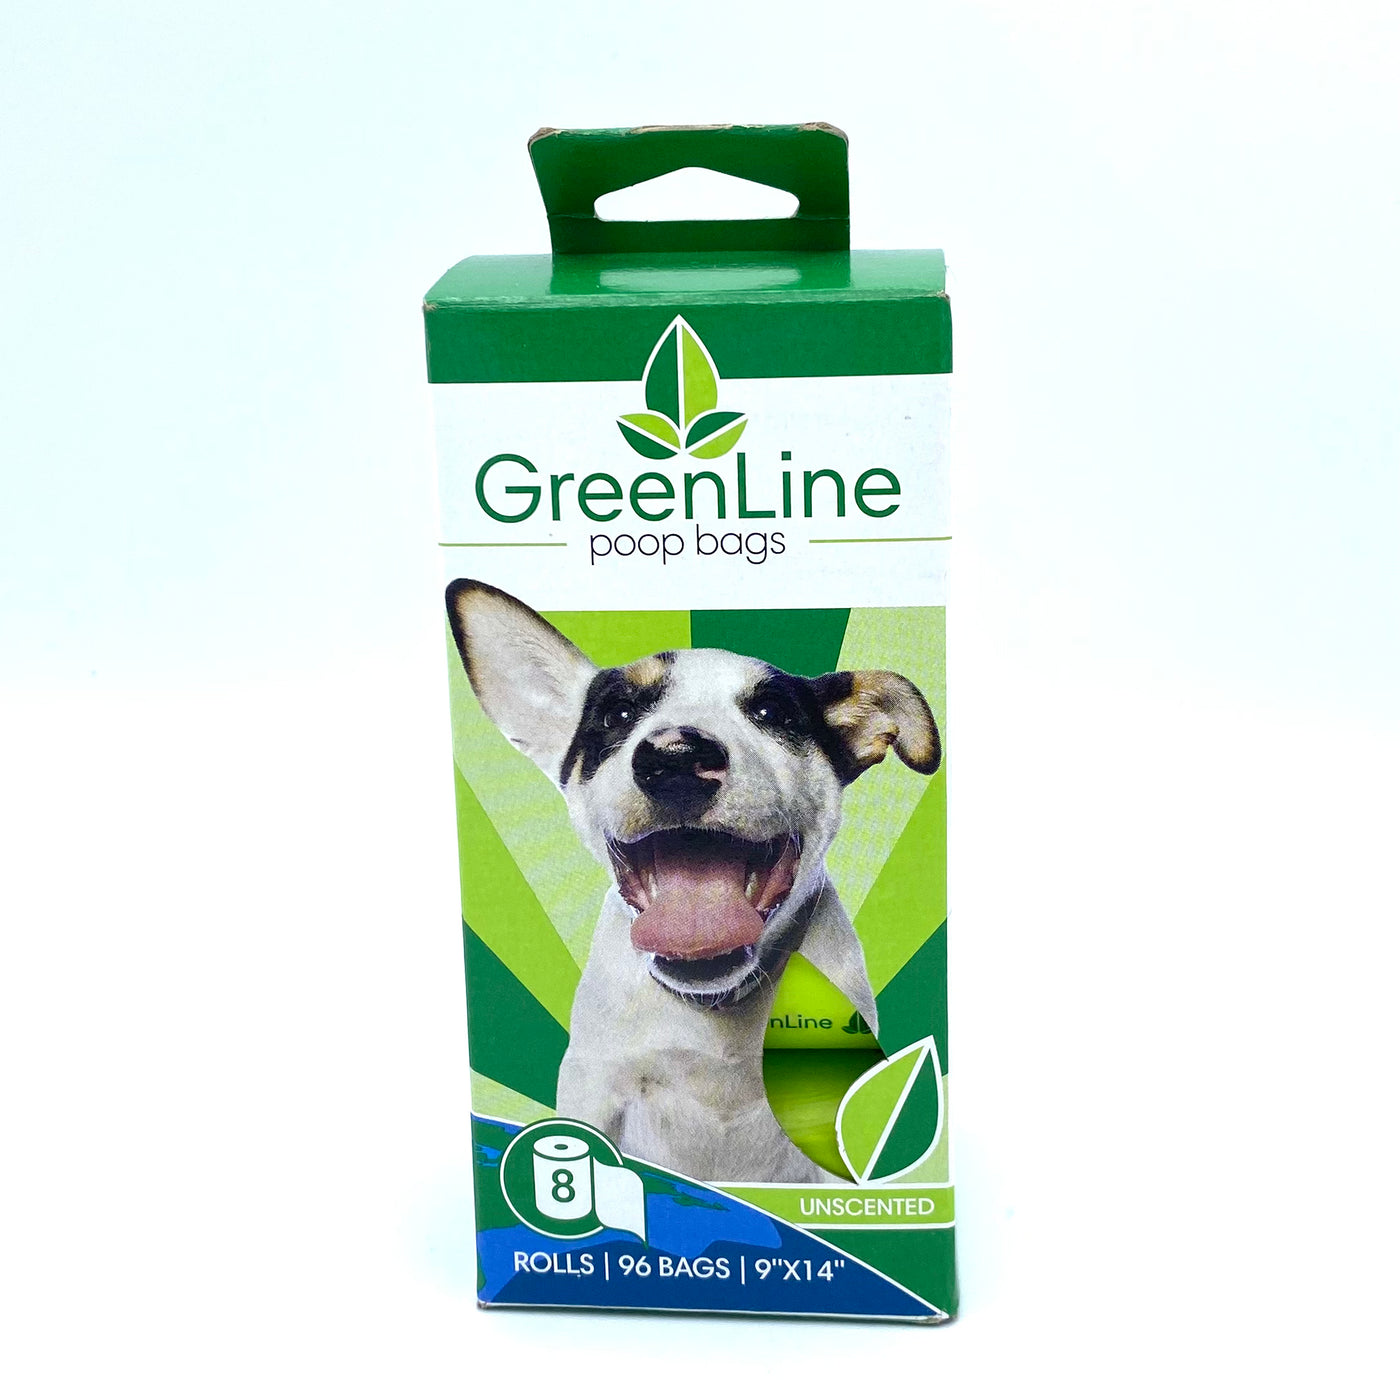 Greenline Bio Poop Bag 8 Roll